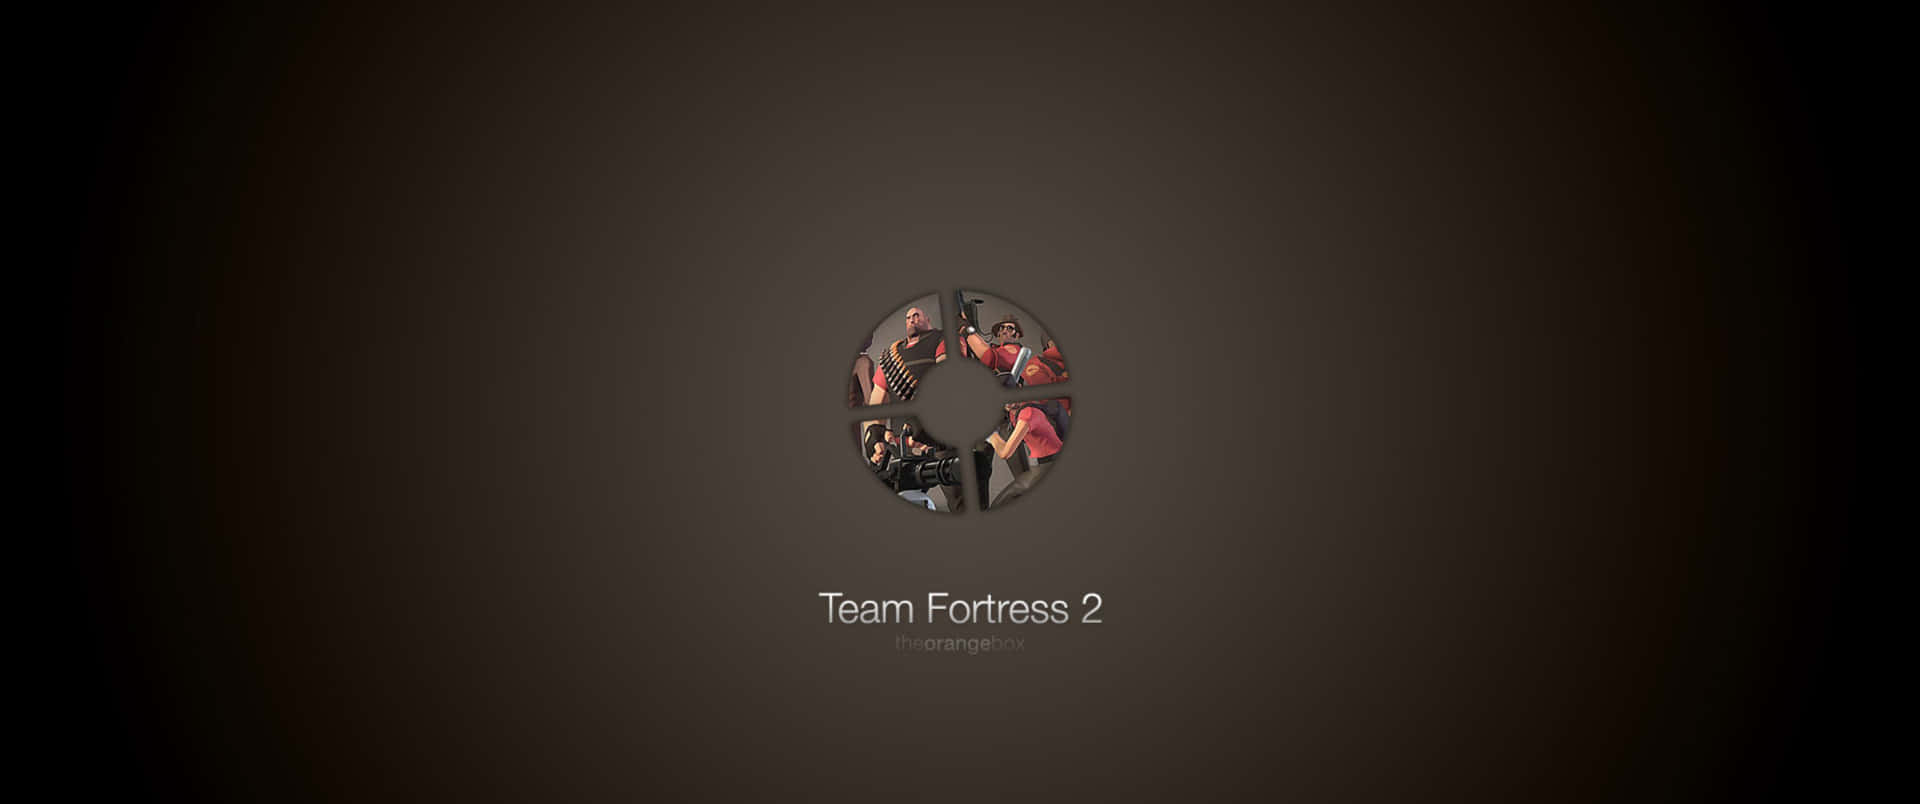 Sfondidi Team Fortress 2